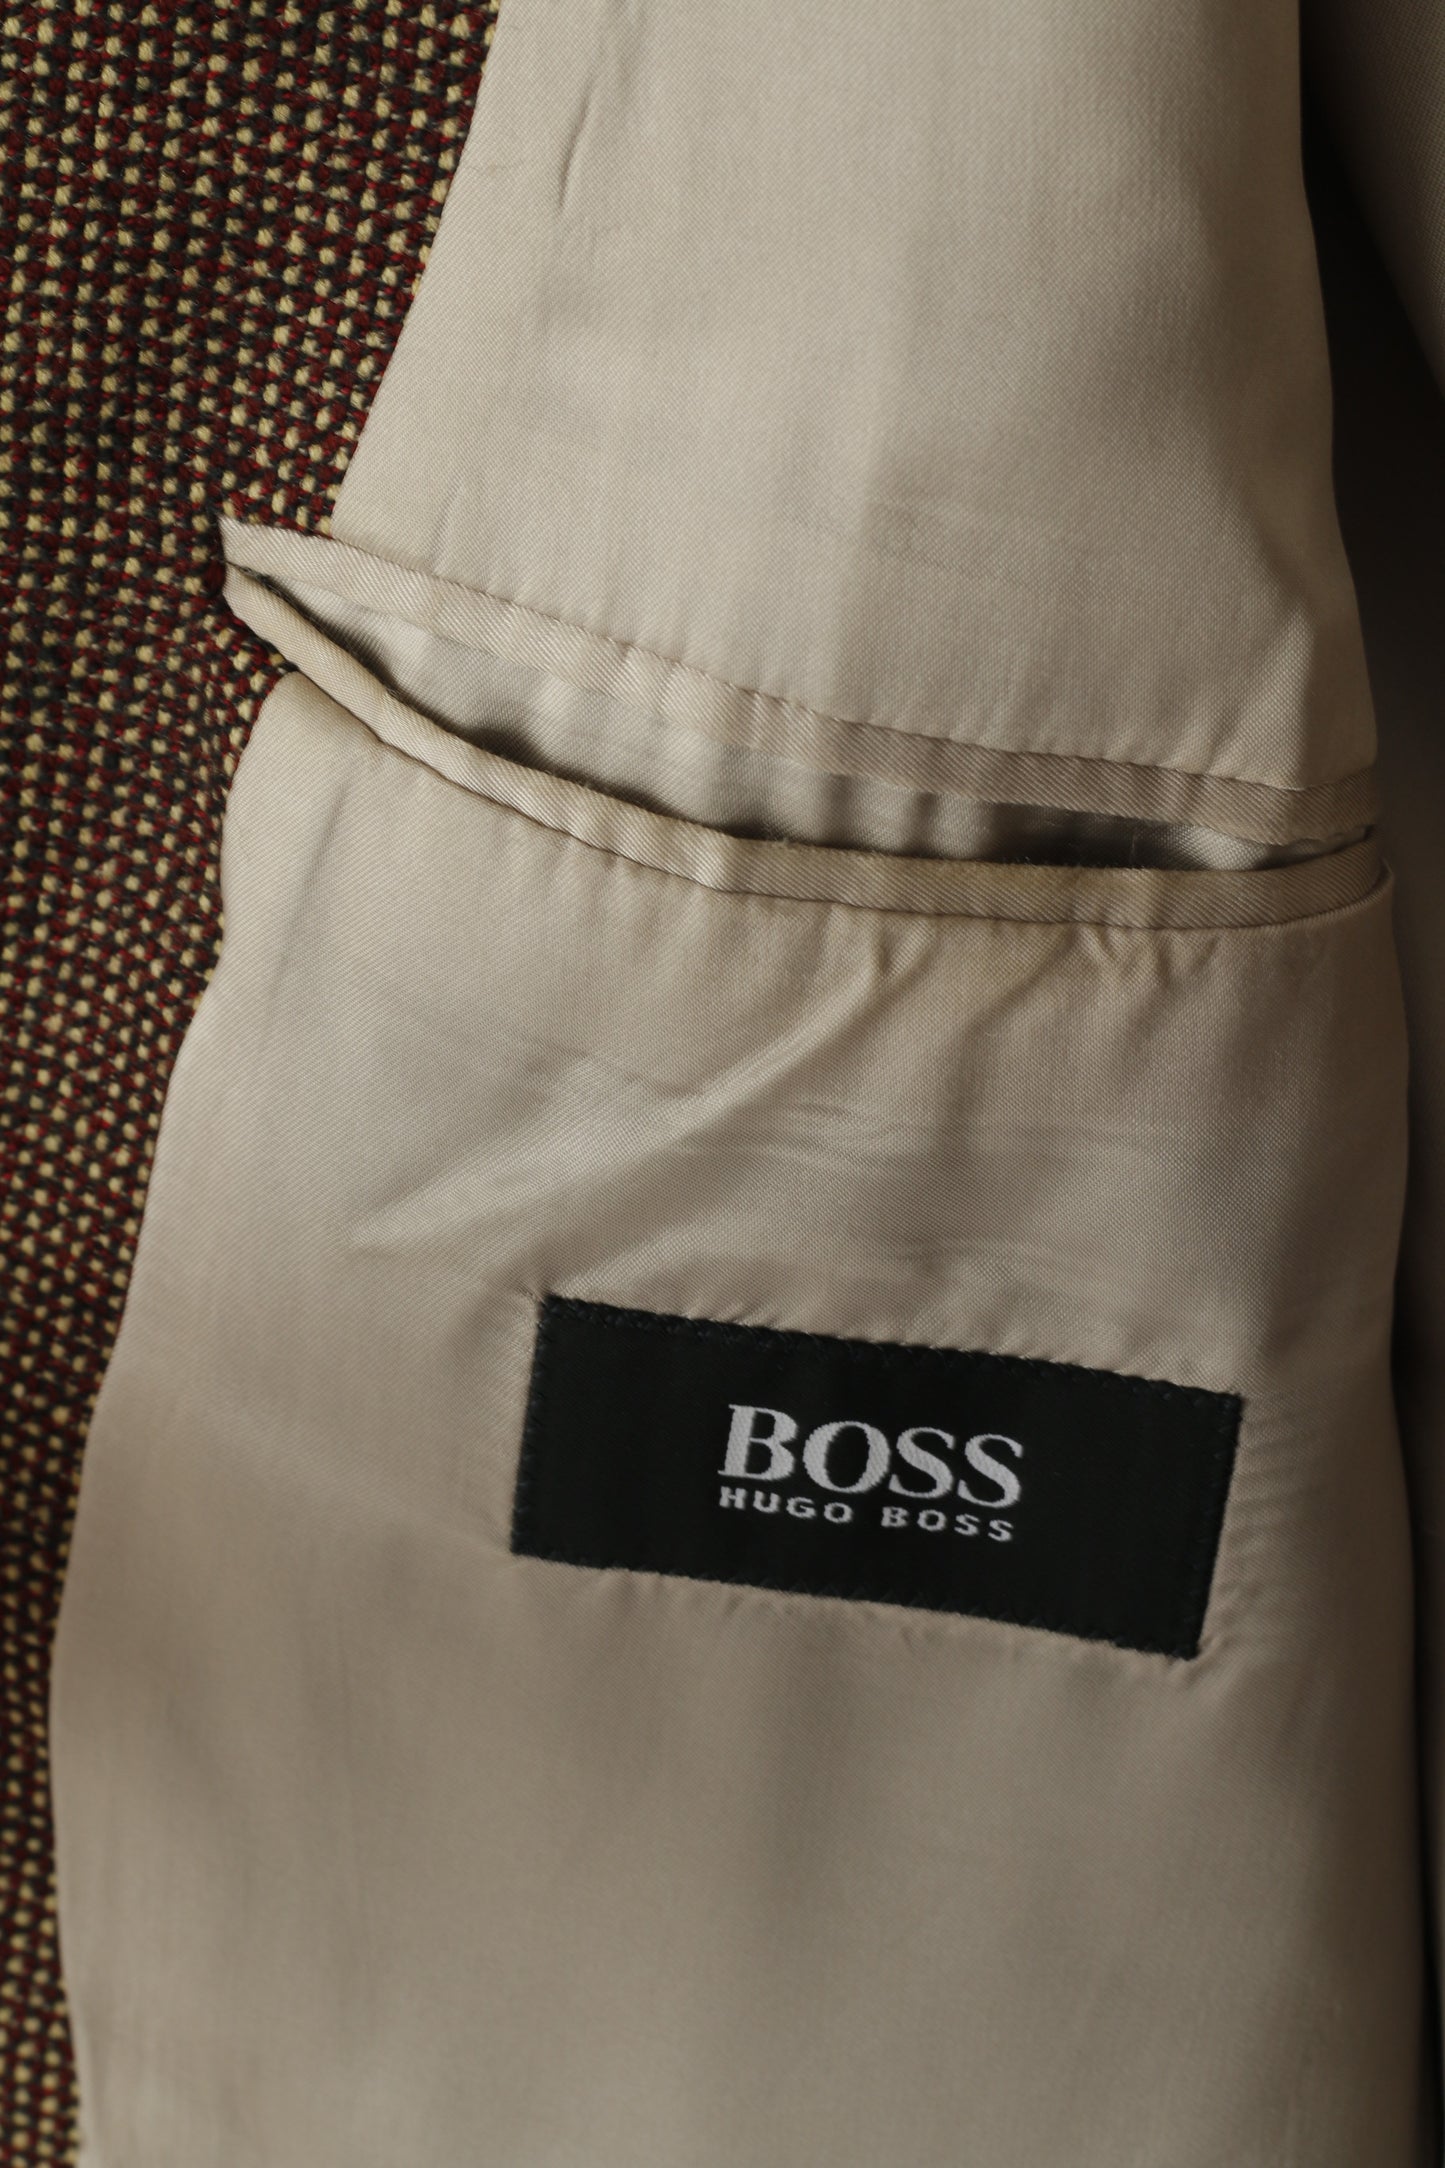 Hugo Boss Men 40 50 Blazer Brown Einstein Wool Look Mr Single Breasted Jacket